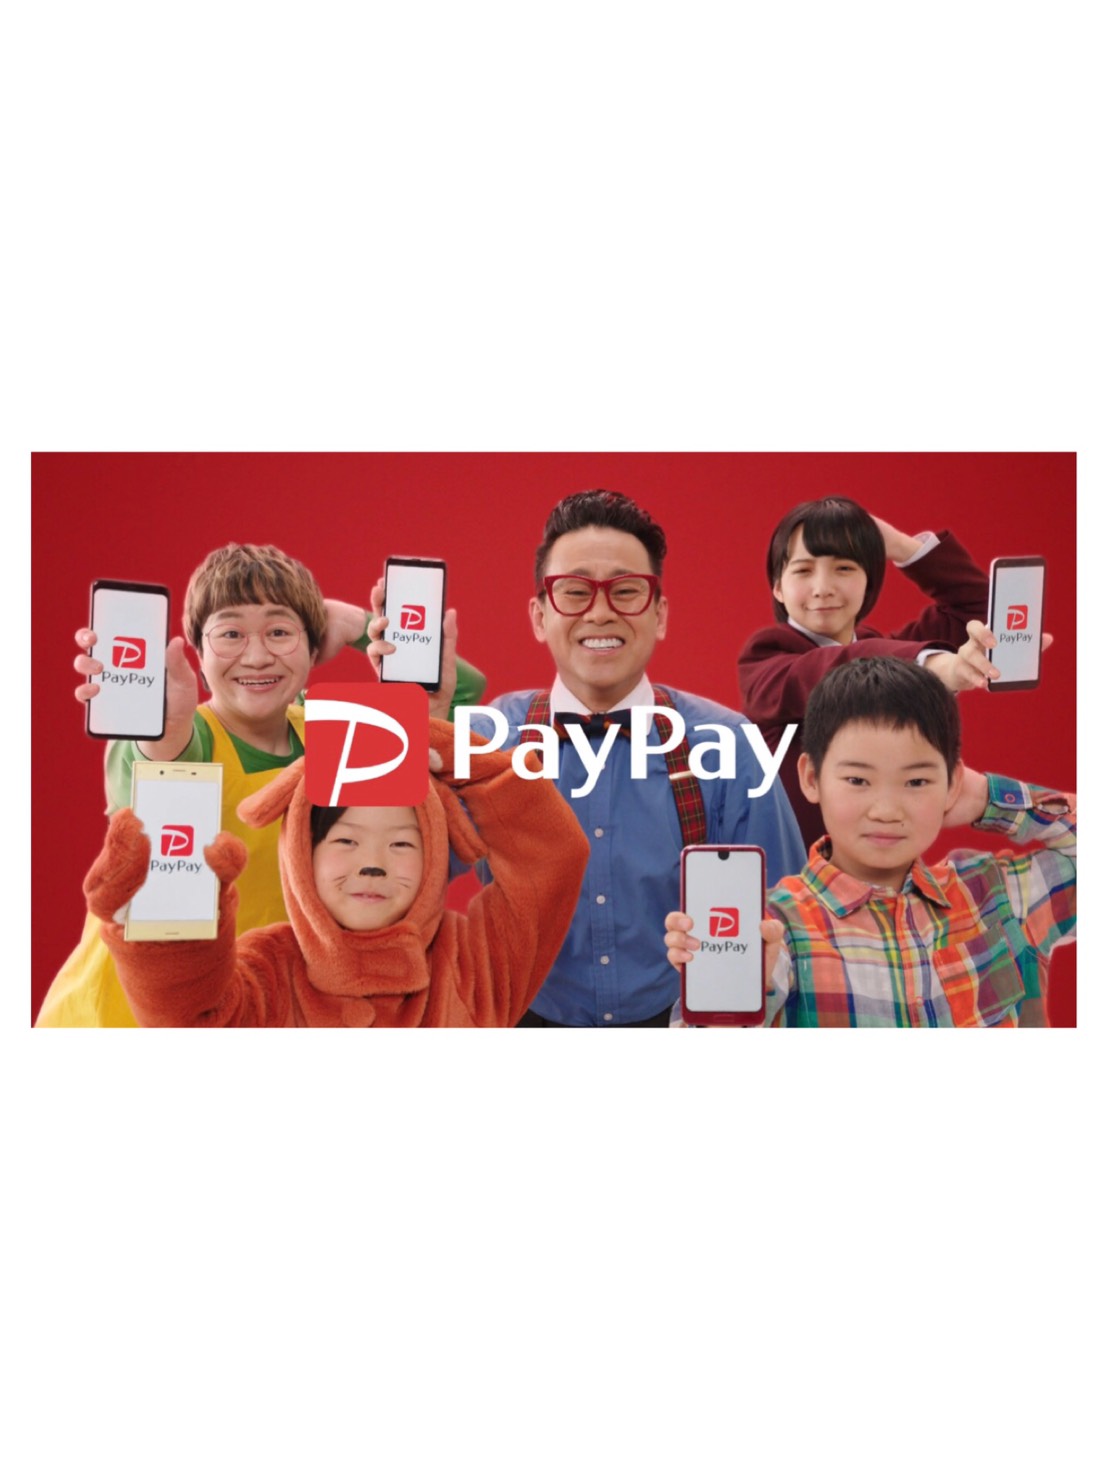 すず paypay 山之内 ペイペイCMは「NEXT PayPay」山之内すずが、これも、これも、公共料金も！宮川大輔も！